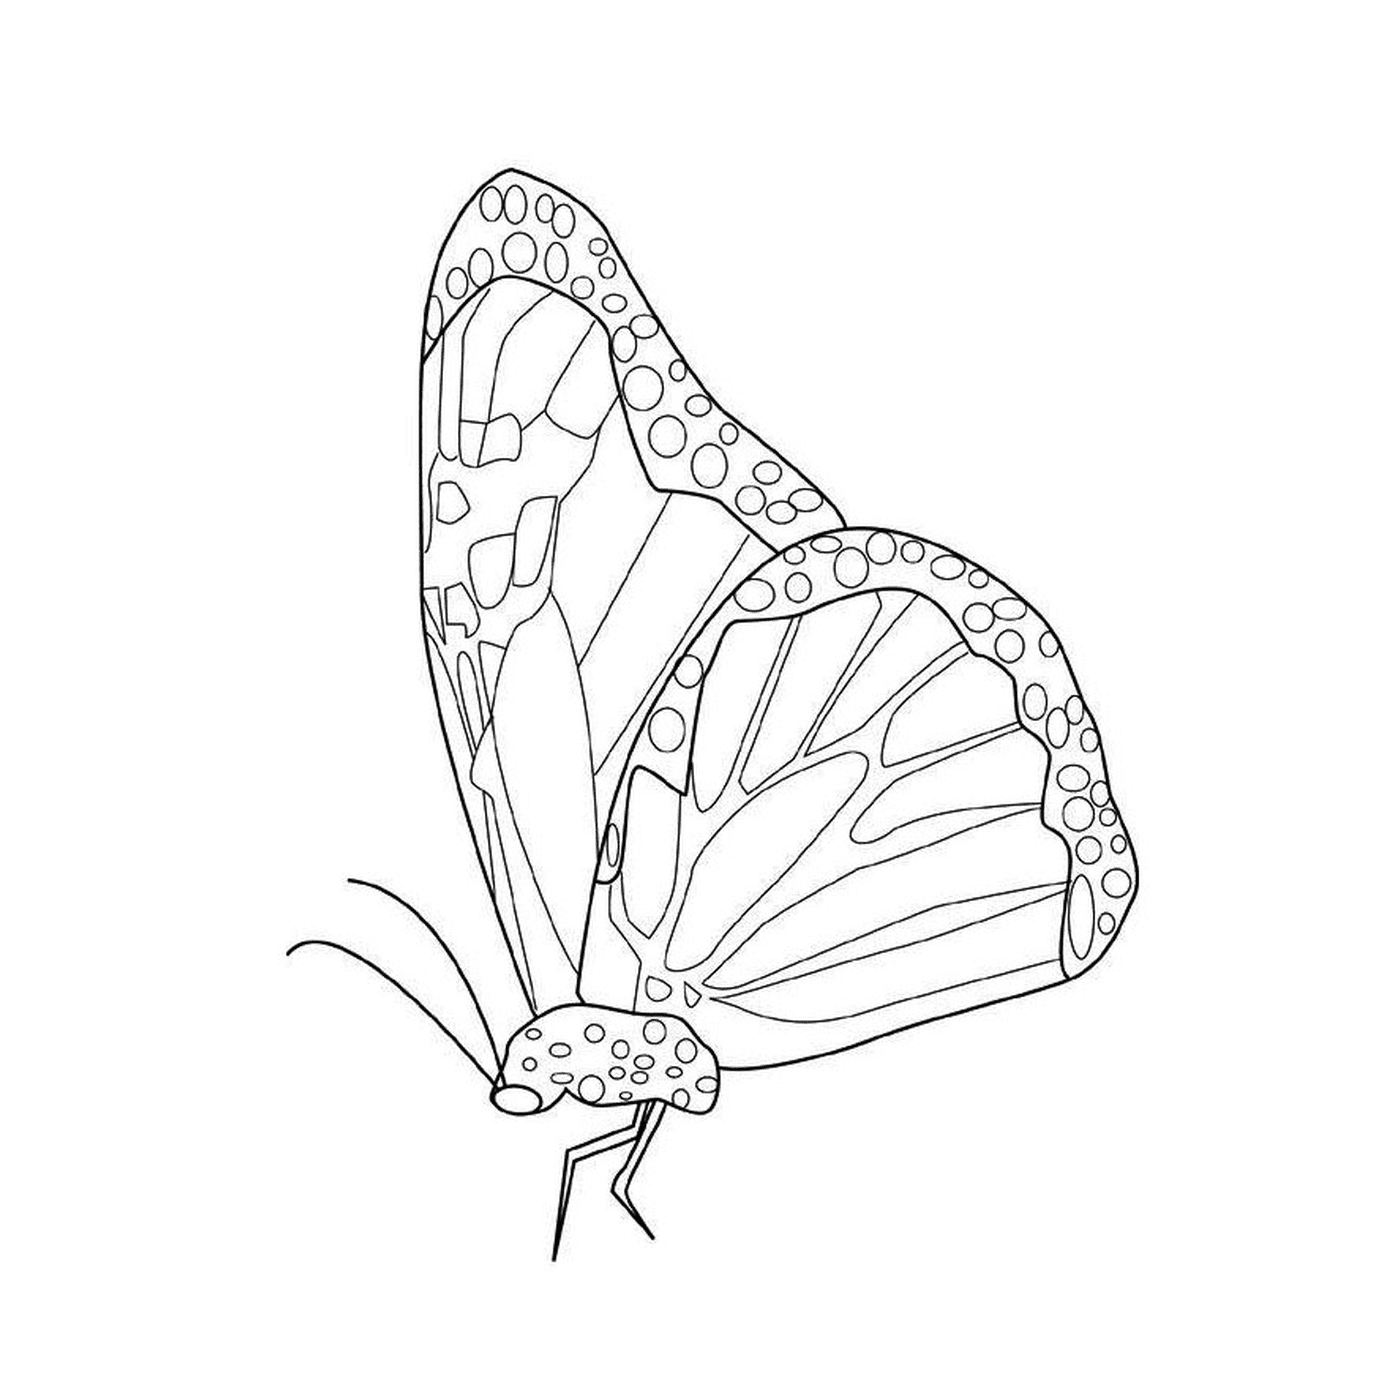  具有独特模式的莫拉克蝴蝶 